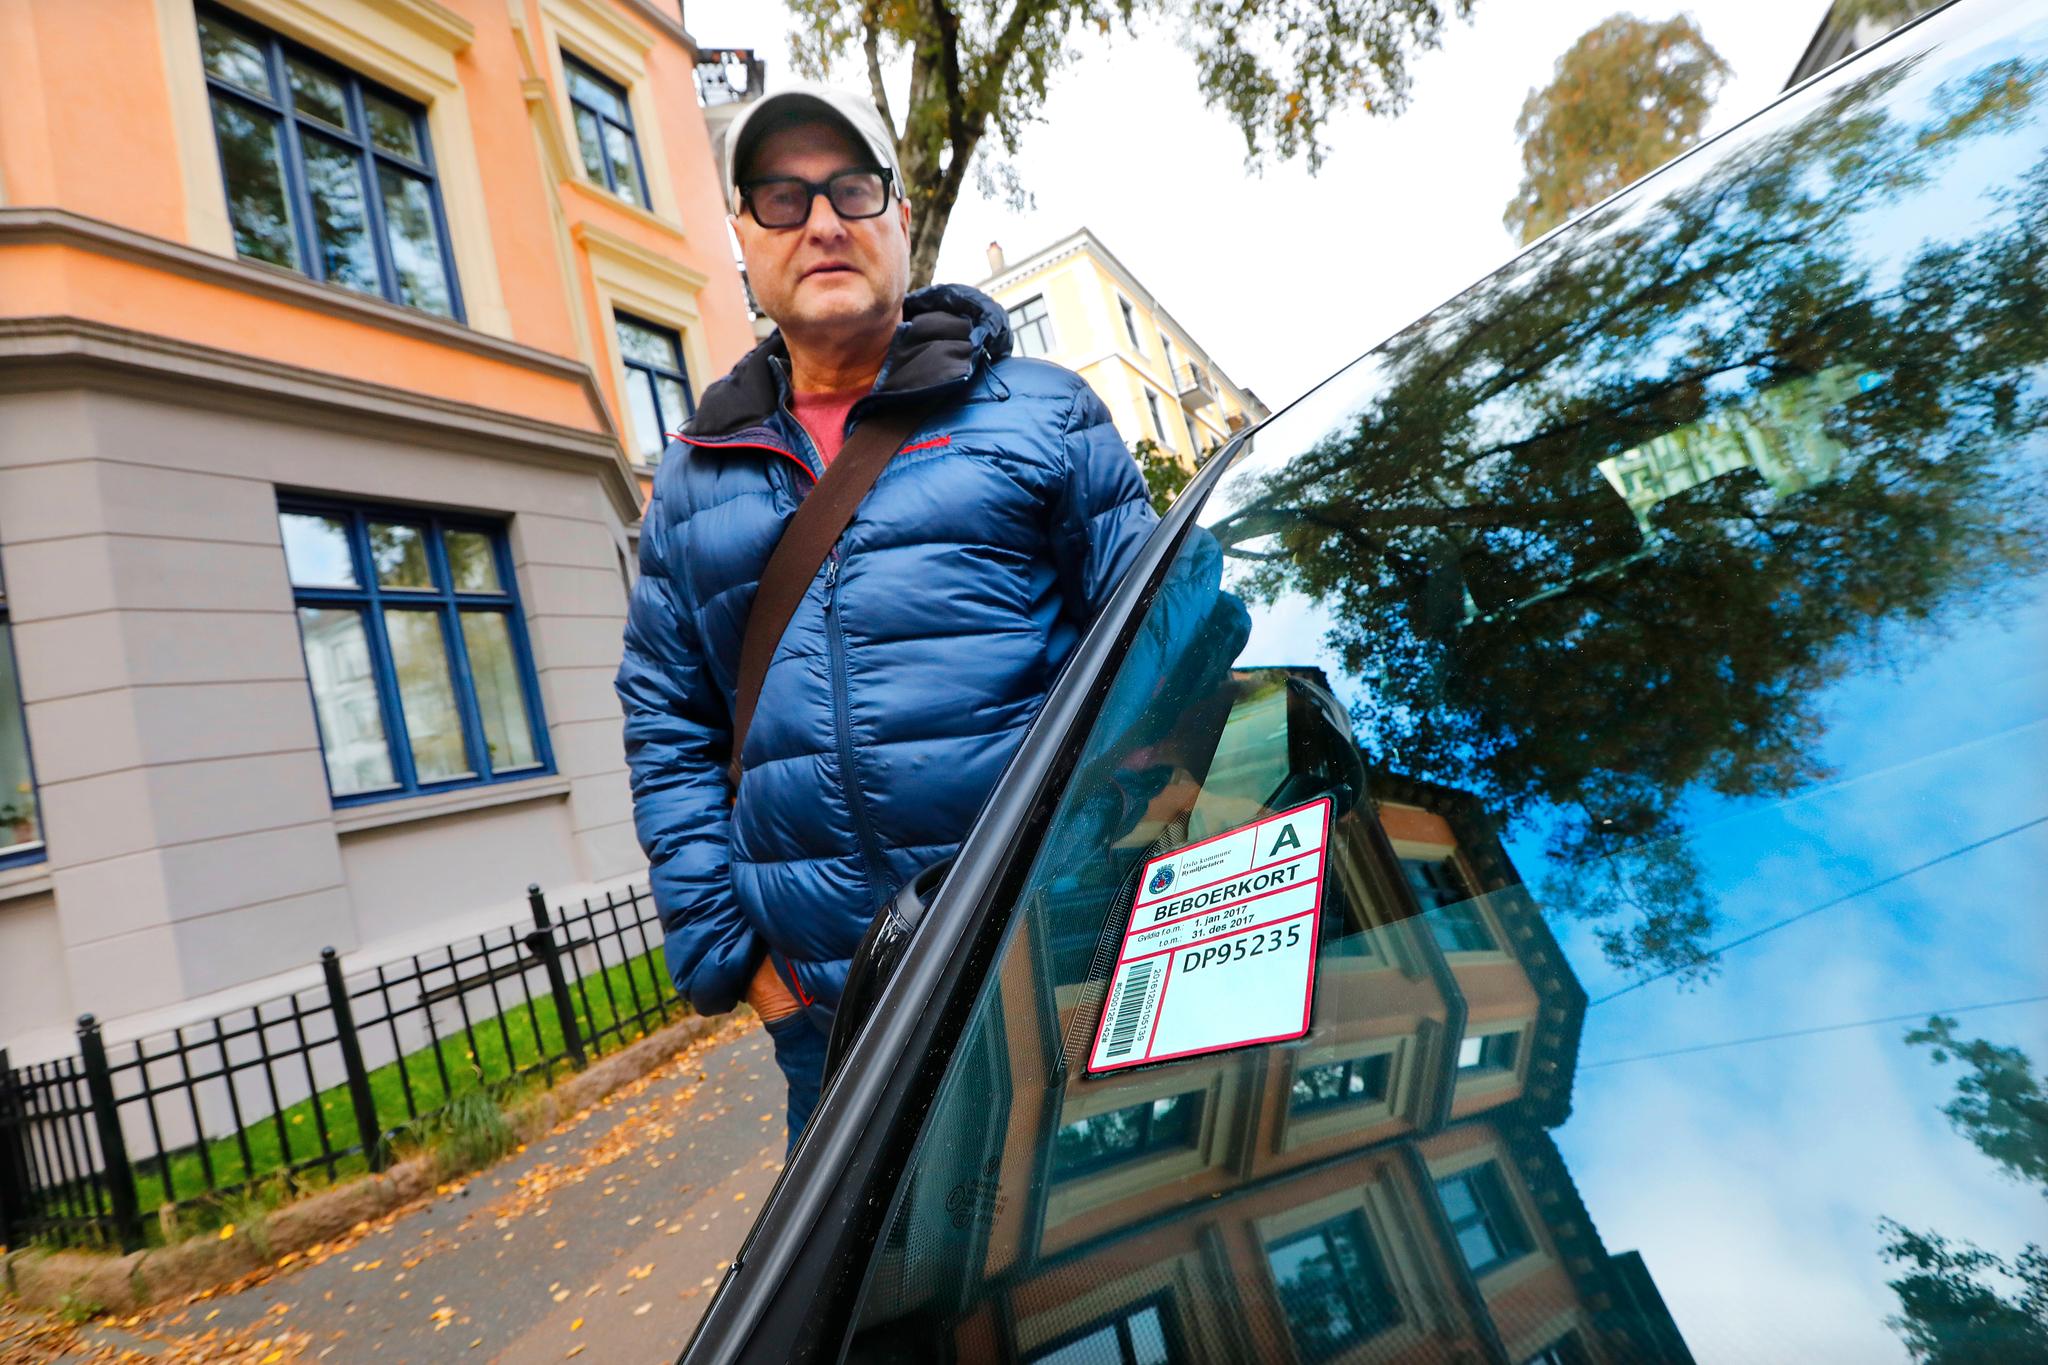  Arne Hågensen på Majorstuen har to biler. Han må ut med 7000 kroner året for å få en mulighet til å parkere gatelangs - men er ikke sikret plass. 